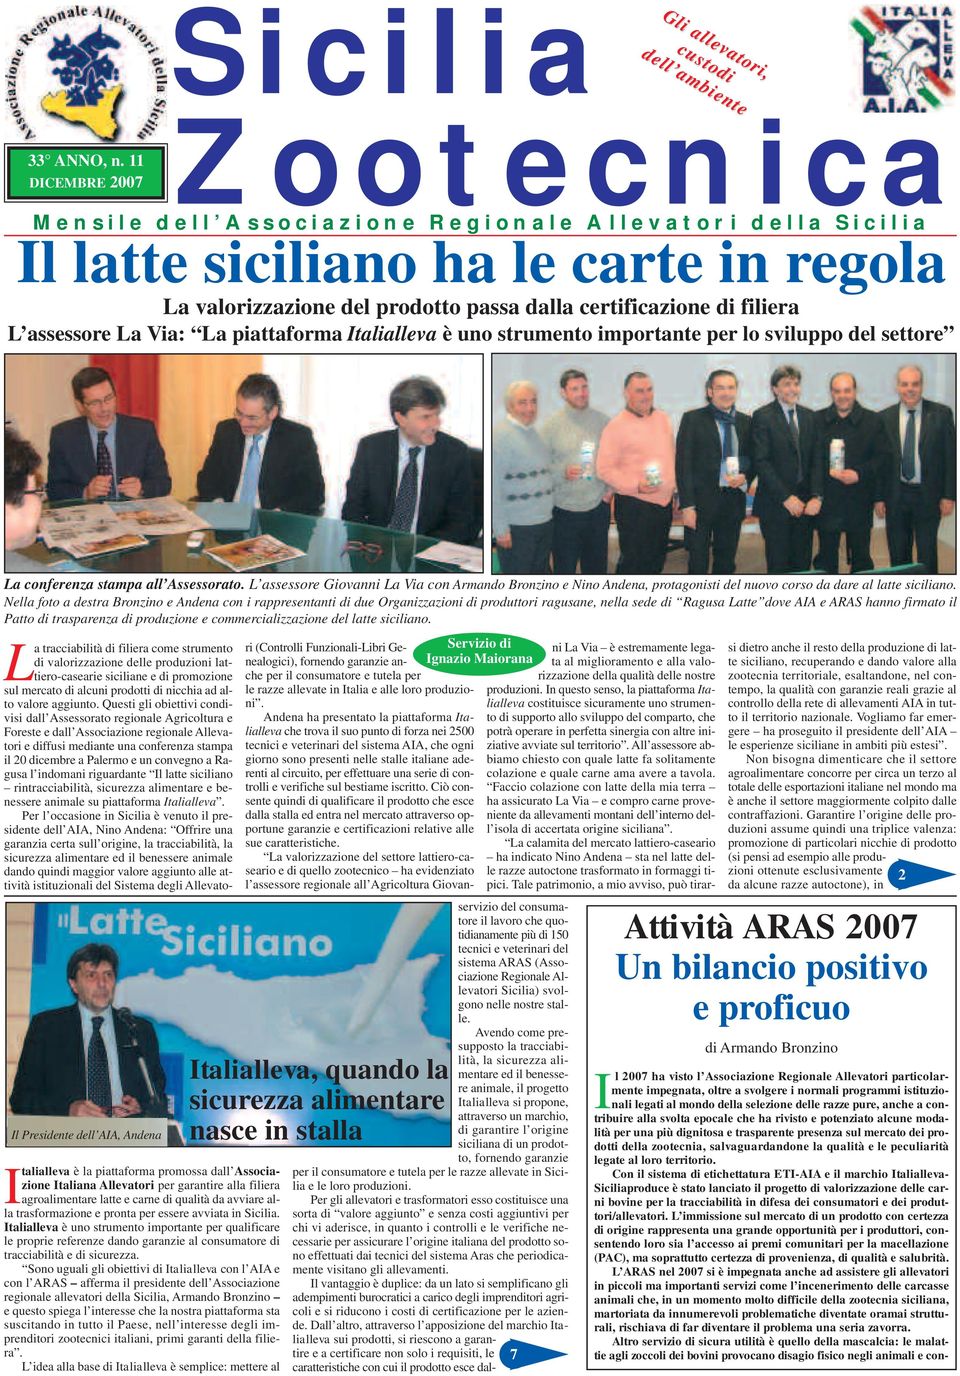 Italialleva è uno strumento importante per lo sviluppo del settore La conferenza stampa all Assessorato.